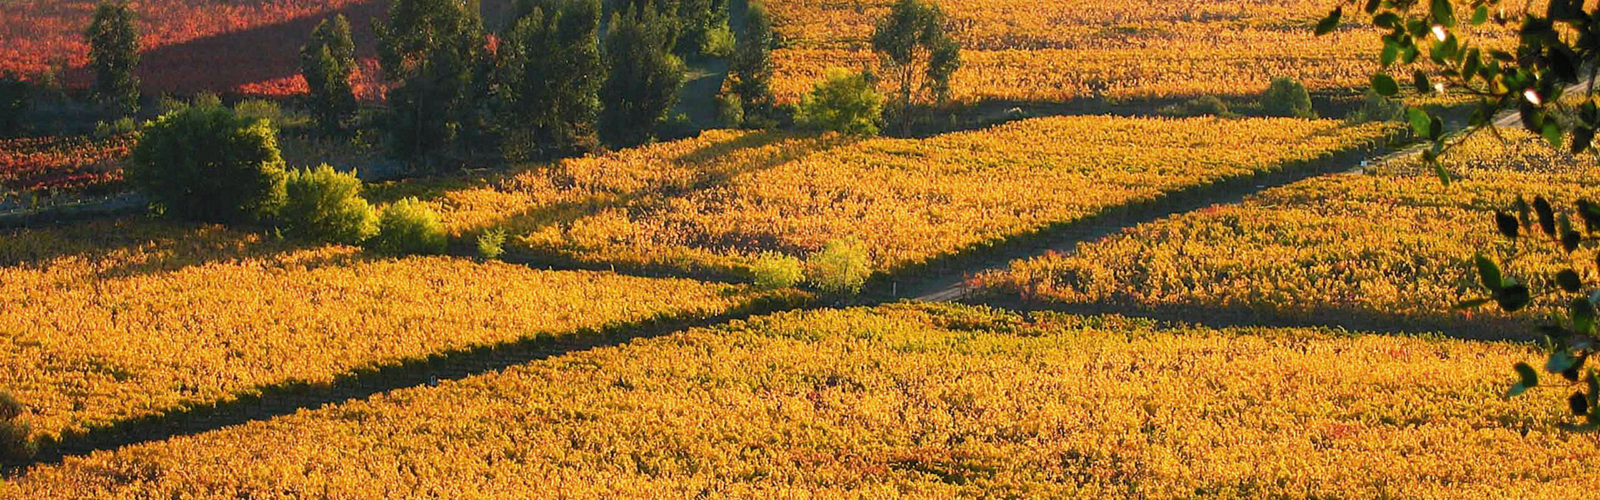 colchagua-valley-wine-region-chile